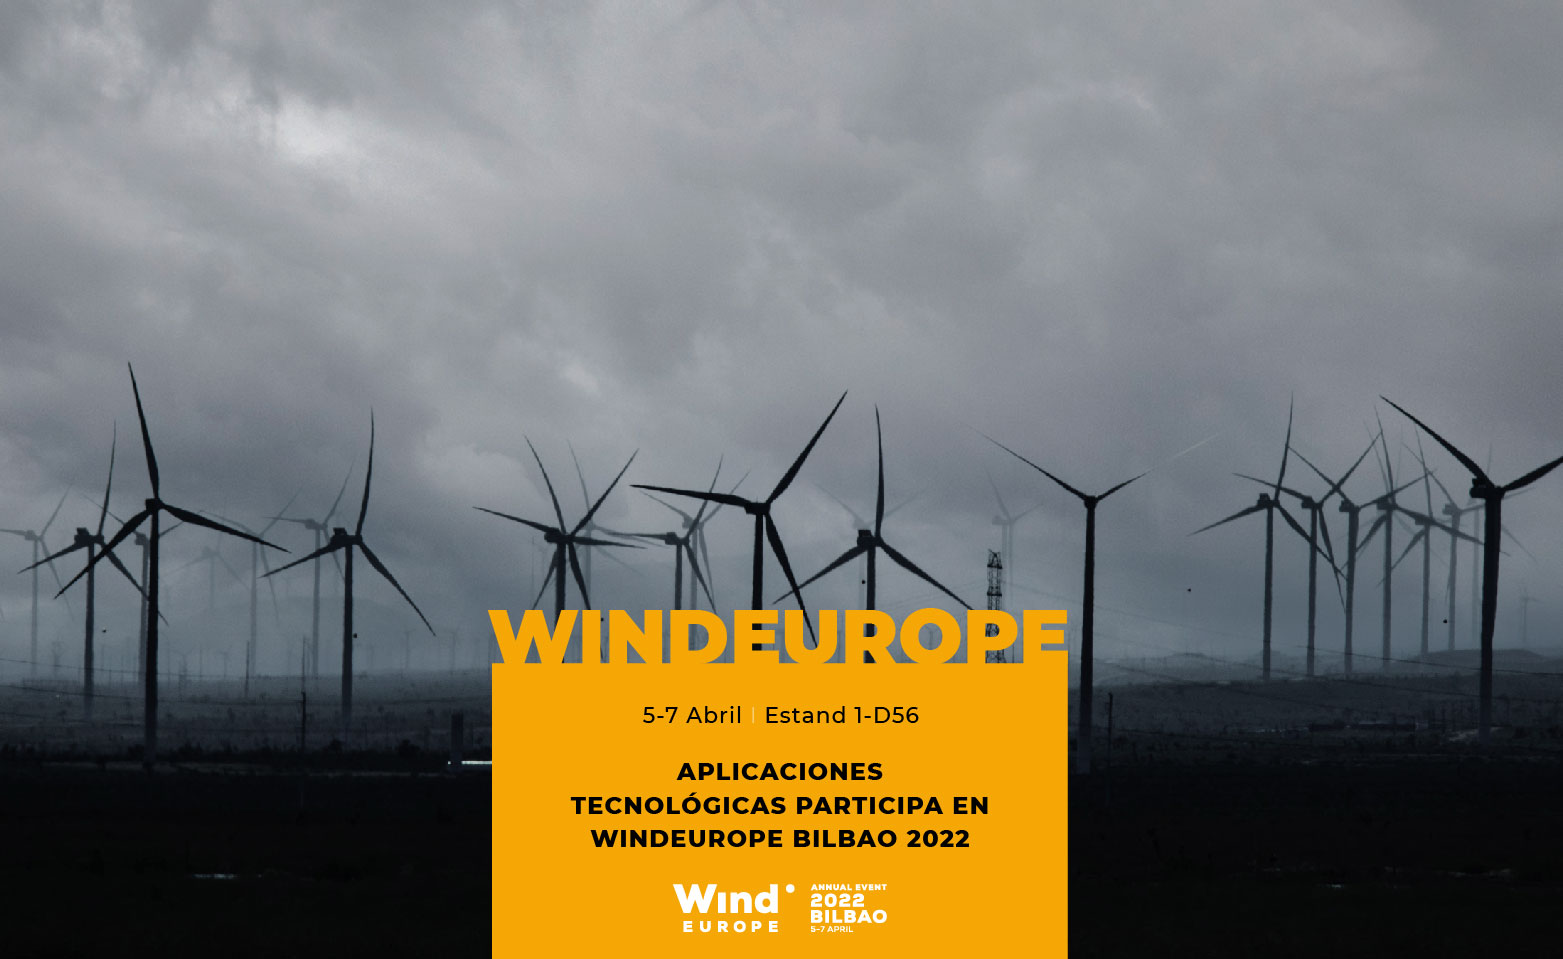 Desde Aplicaciones Tecnológicas S.A. participamos en WindEurope 2022 del 5 al 7 de abril en Bilbao con nuestros productos específicamente diseñados para maximizar la seguridad laboral y el ahorro en costes en el sector eólico. Estaremos en el estand 1-D56 para informar de nuestras novedosas soluciones tecnológicas, así como del lanzamiento de un avanzado producto para los aerogeneradores.